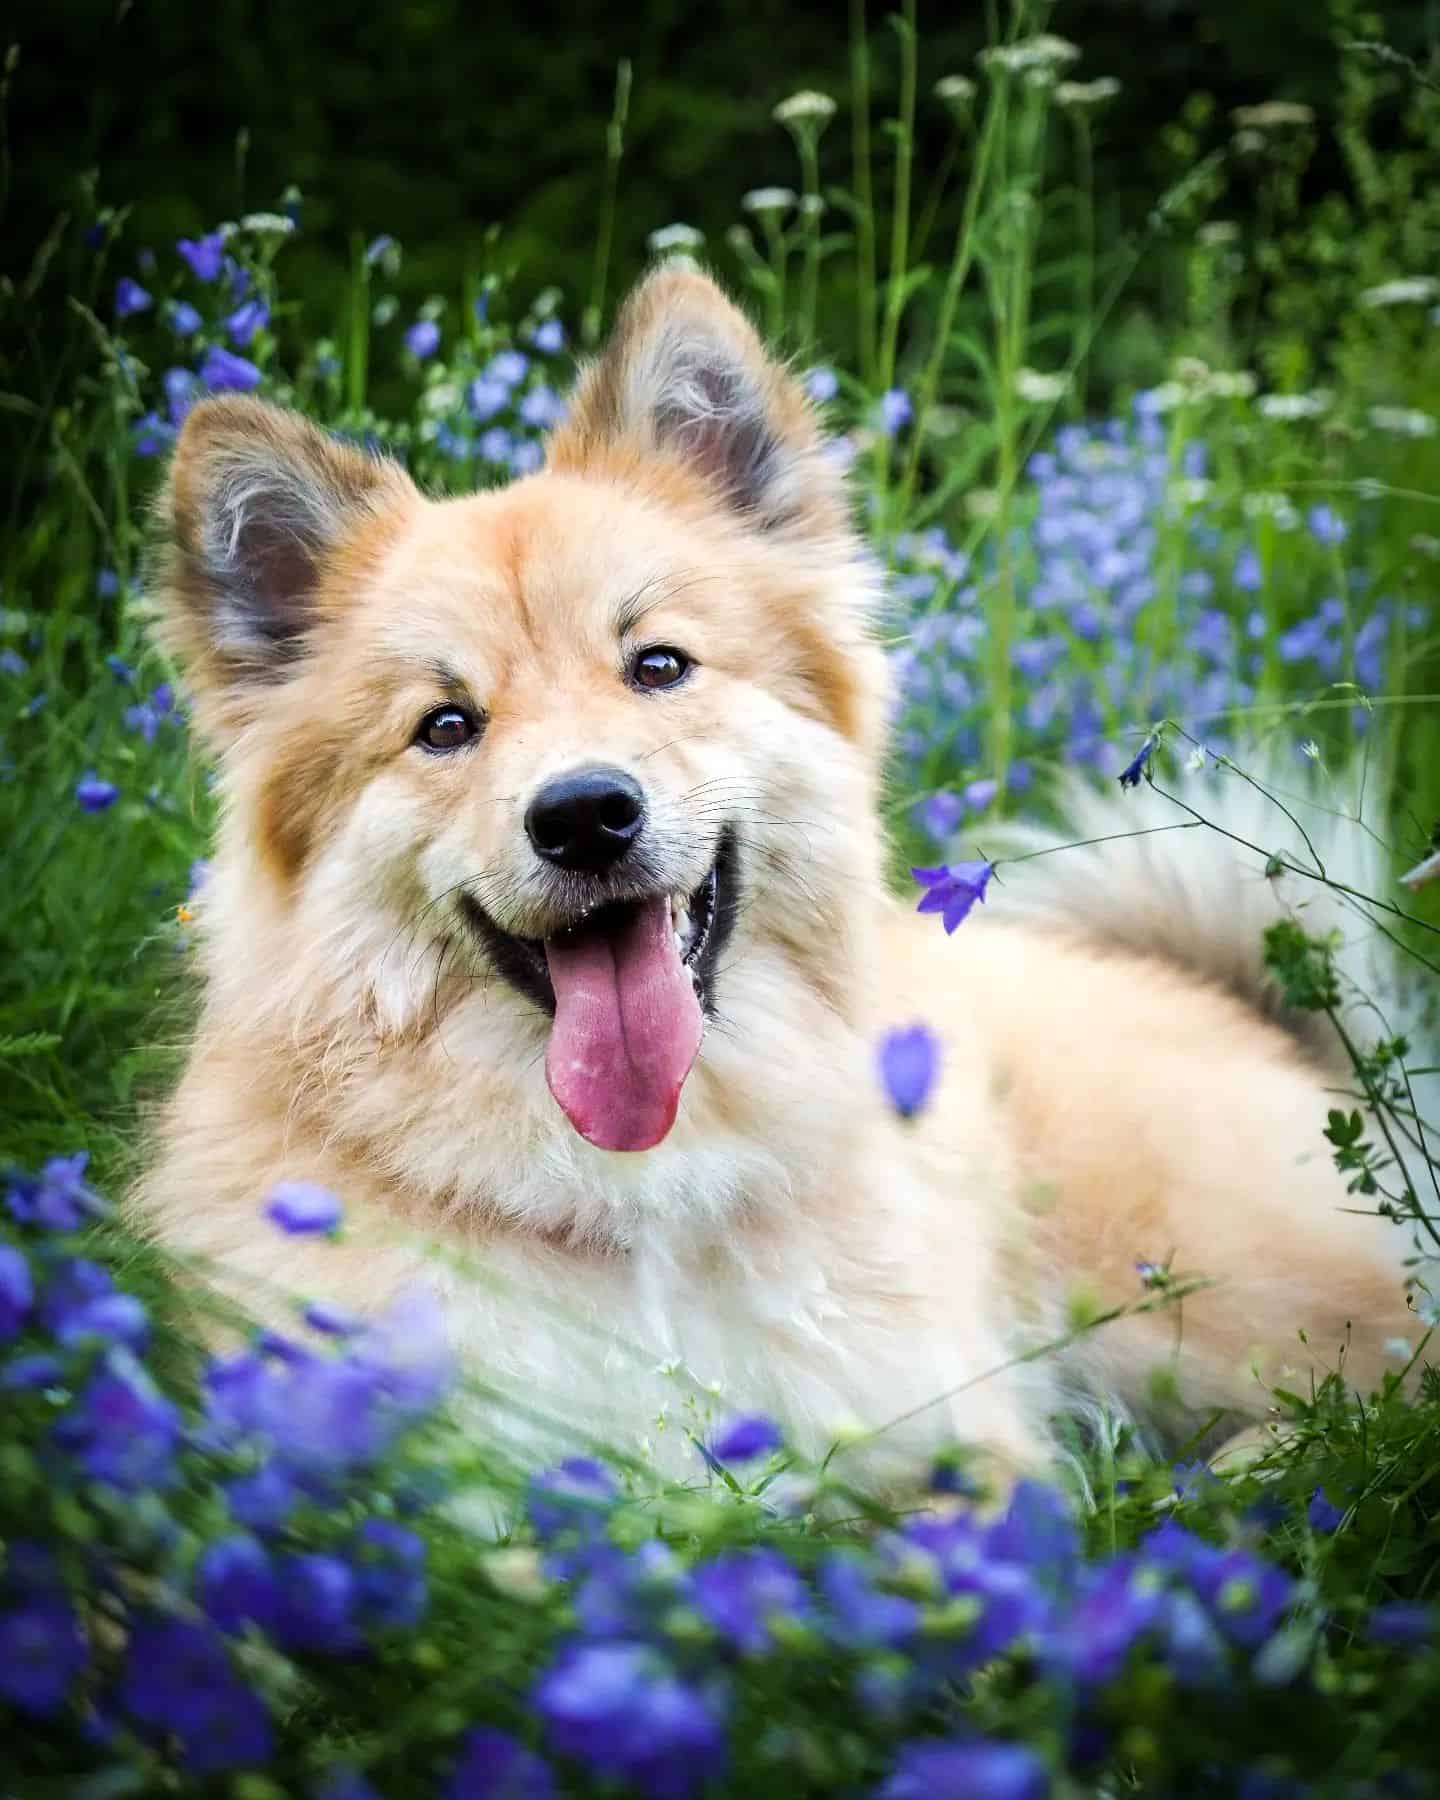 Finnish Lapphund dog in flower field